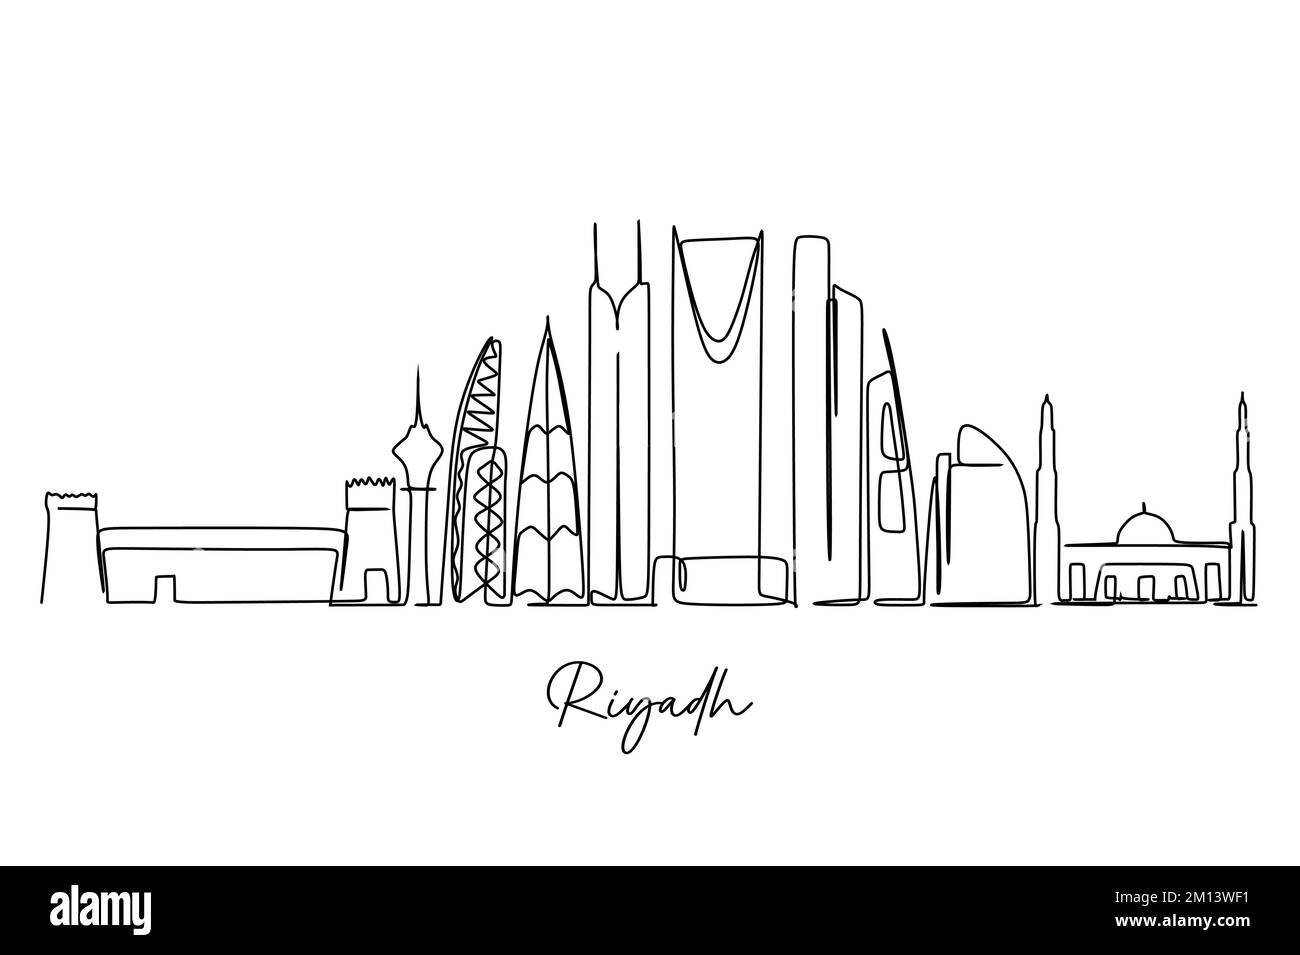 Un disegno a linea continua dello skyline della città di Riyadh. Destinazione turistica famosa in tutto il mondo. Semplice disegno di stile disegnato a mano per viaggi e turismo promozione Illustrazione Vettoriale